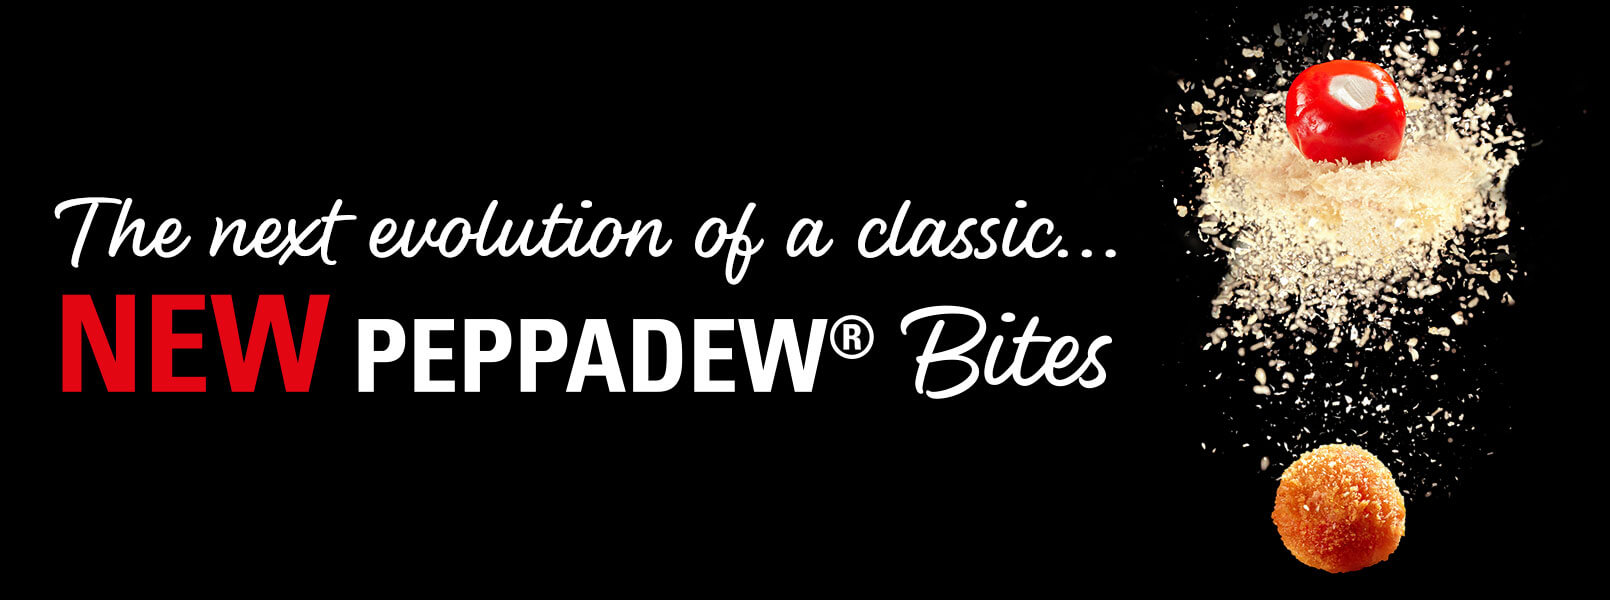 peppadew bites slider (1)